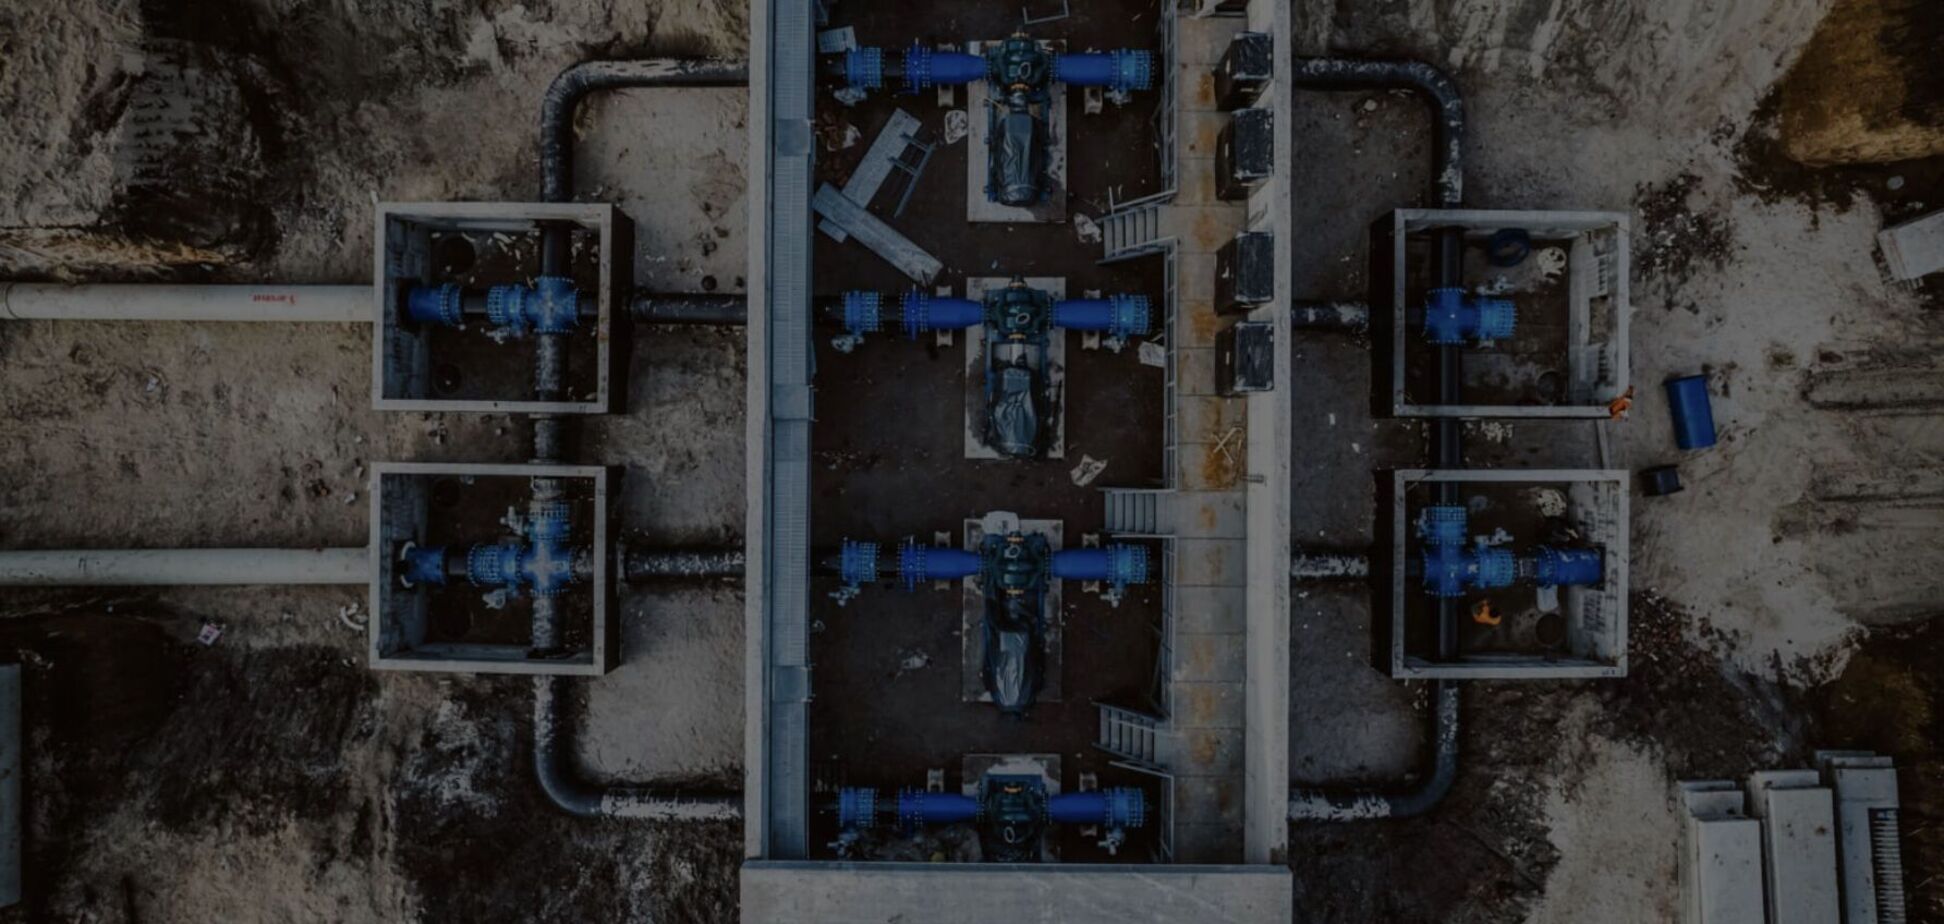 Минфин не заплатил 3,5 млрд грн за восстановление водопровода на Днепропетровщине после подрыва Каховской ГЭС, – Шкиль